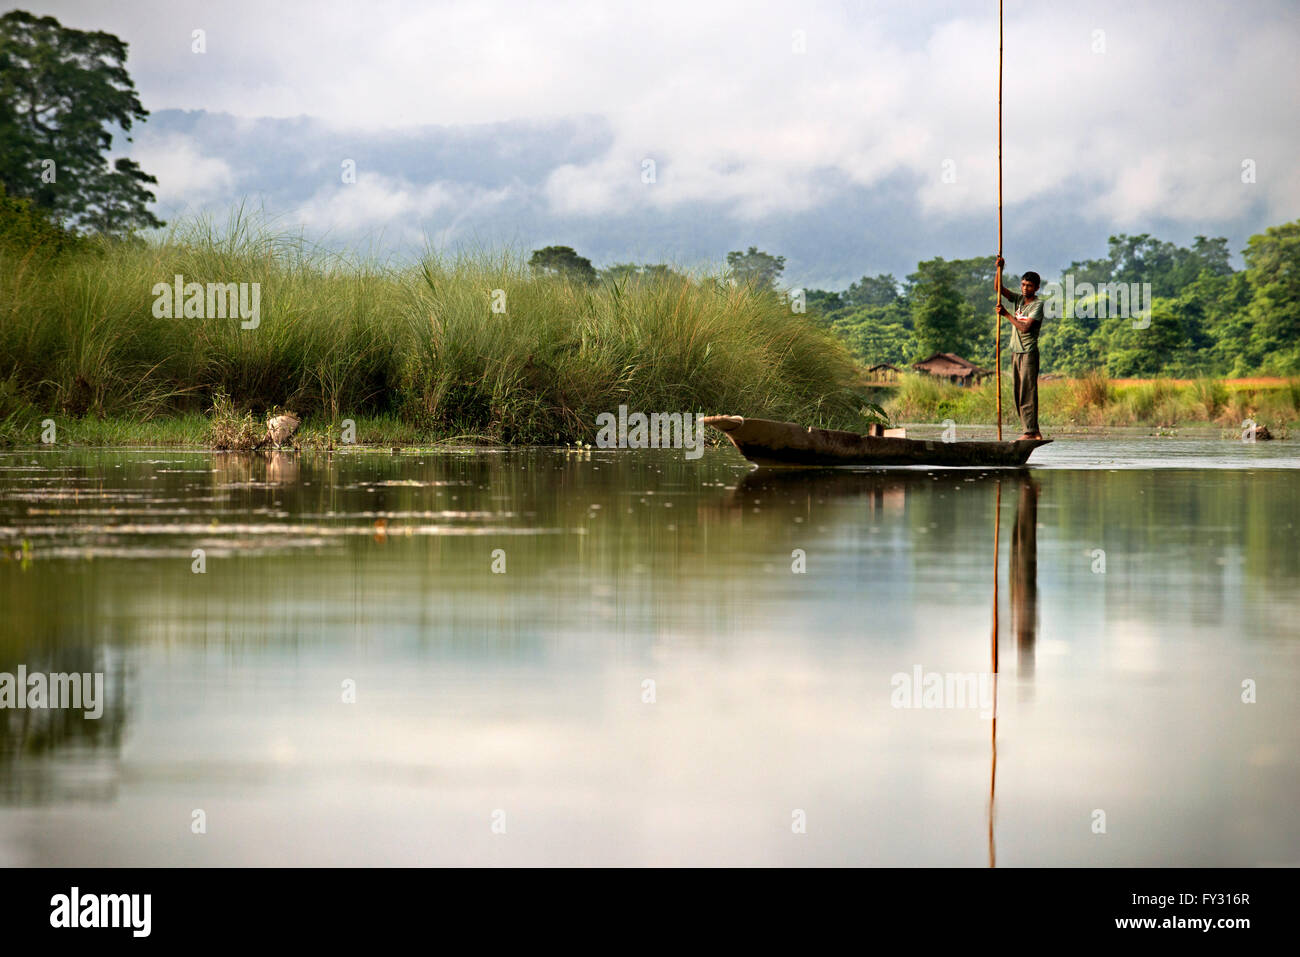 Gita in barca sul fiume Rapti, Chitwan il parco nazionale, Nepal, Asia Foto Stock